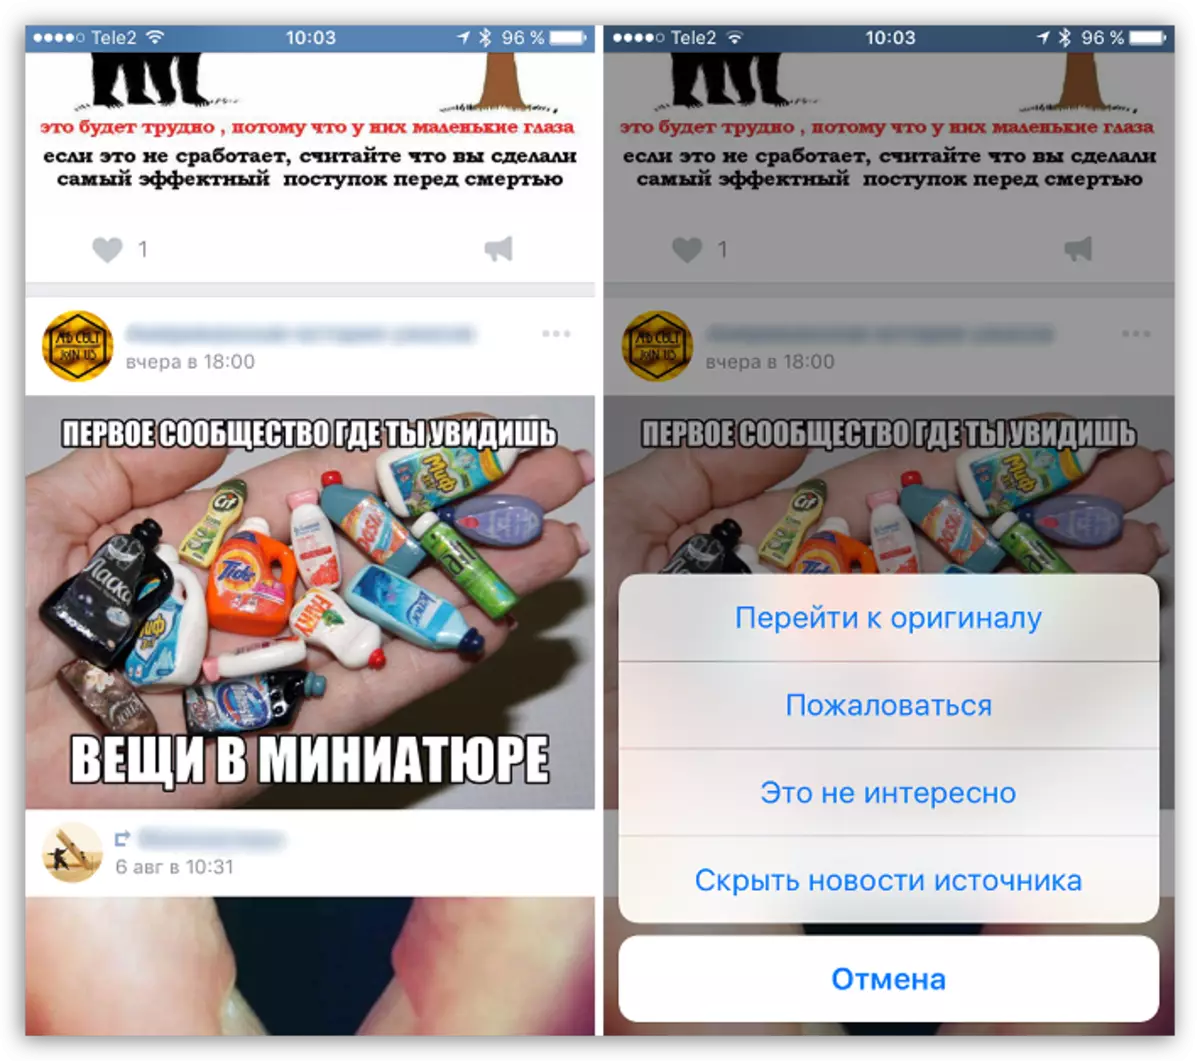 Nouvelles Ruban à Vkontakte pour iOS